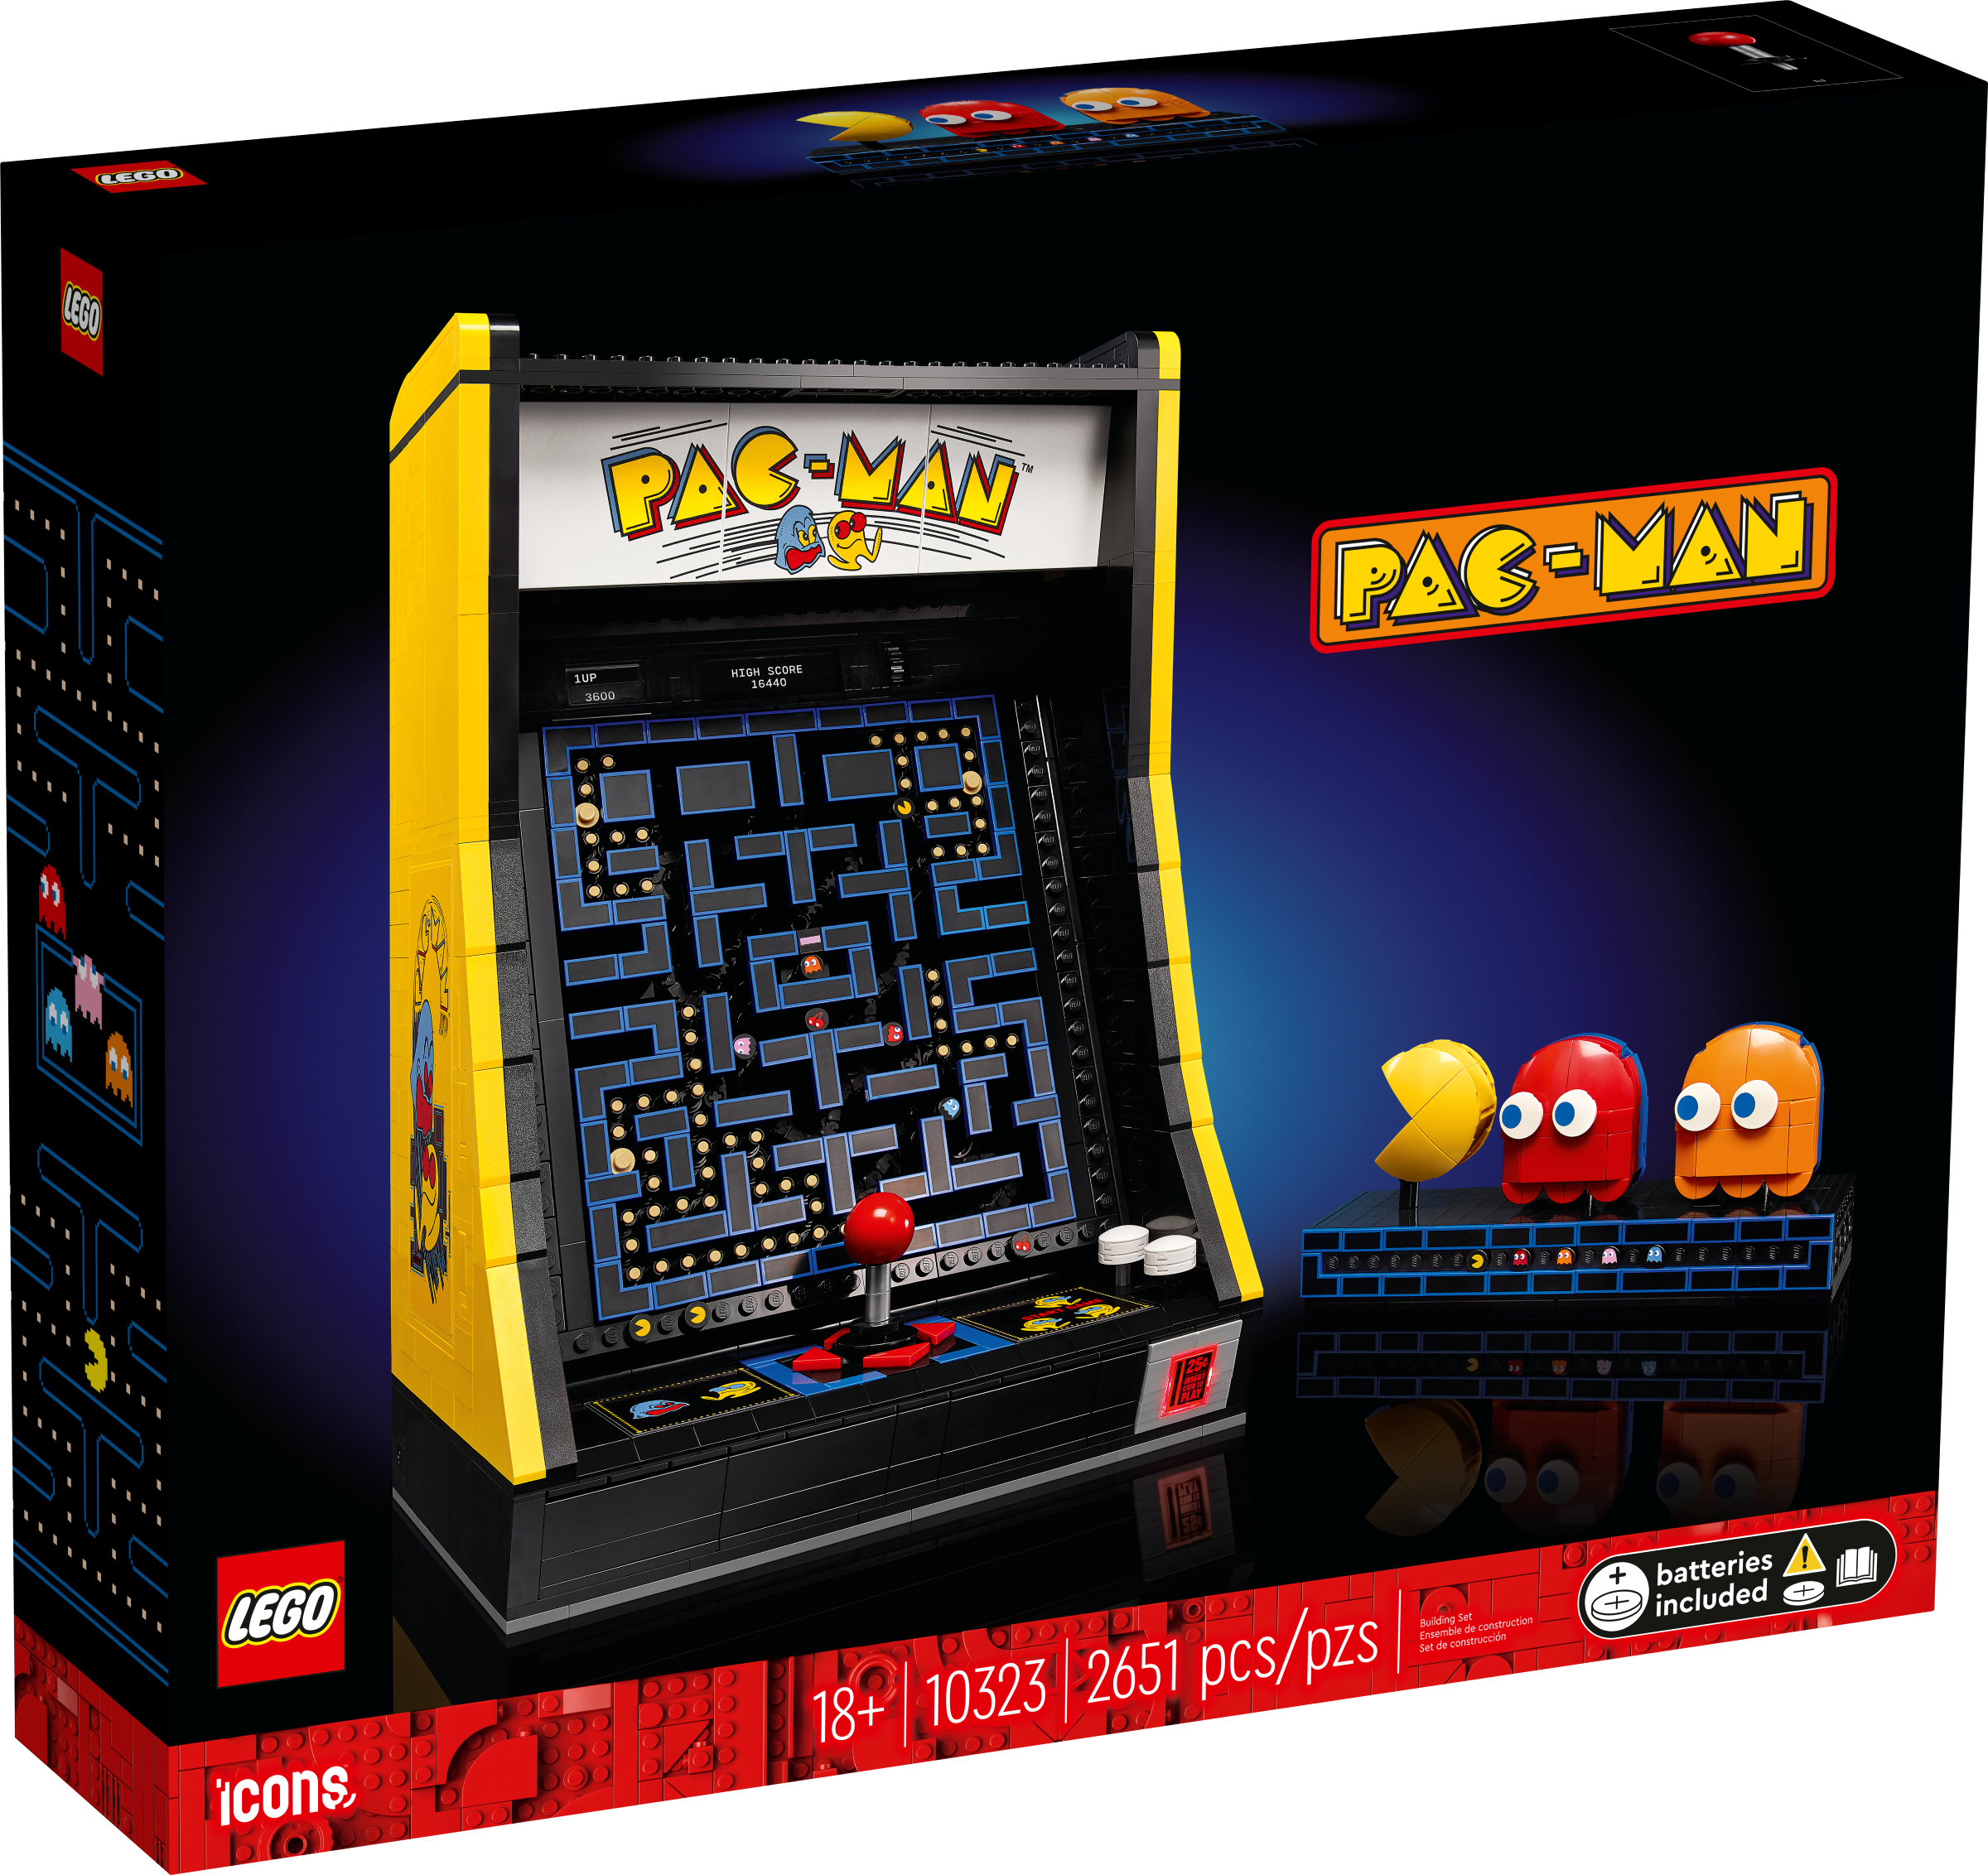 LEGO Icons PAC-MAN Spielautomat (10323) - im GOLDSTIEN.SHOP verfügbar mit Gratisversand ab Schweizer Lager! (5702017416946)